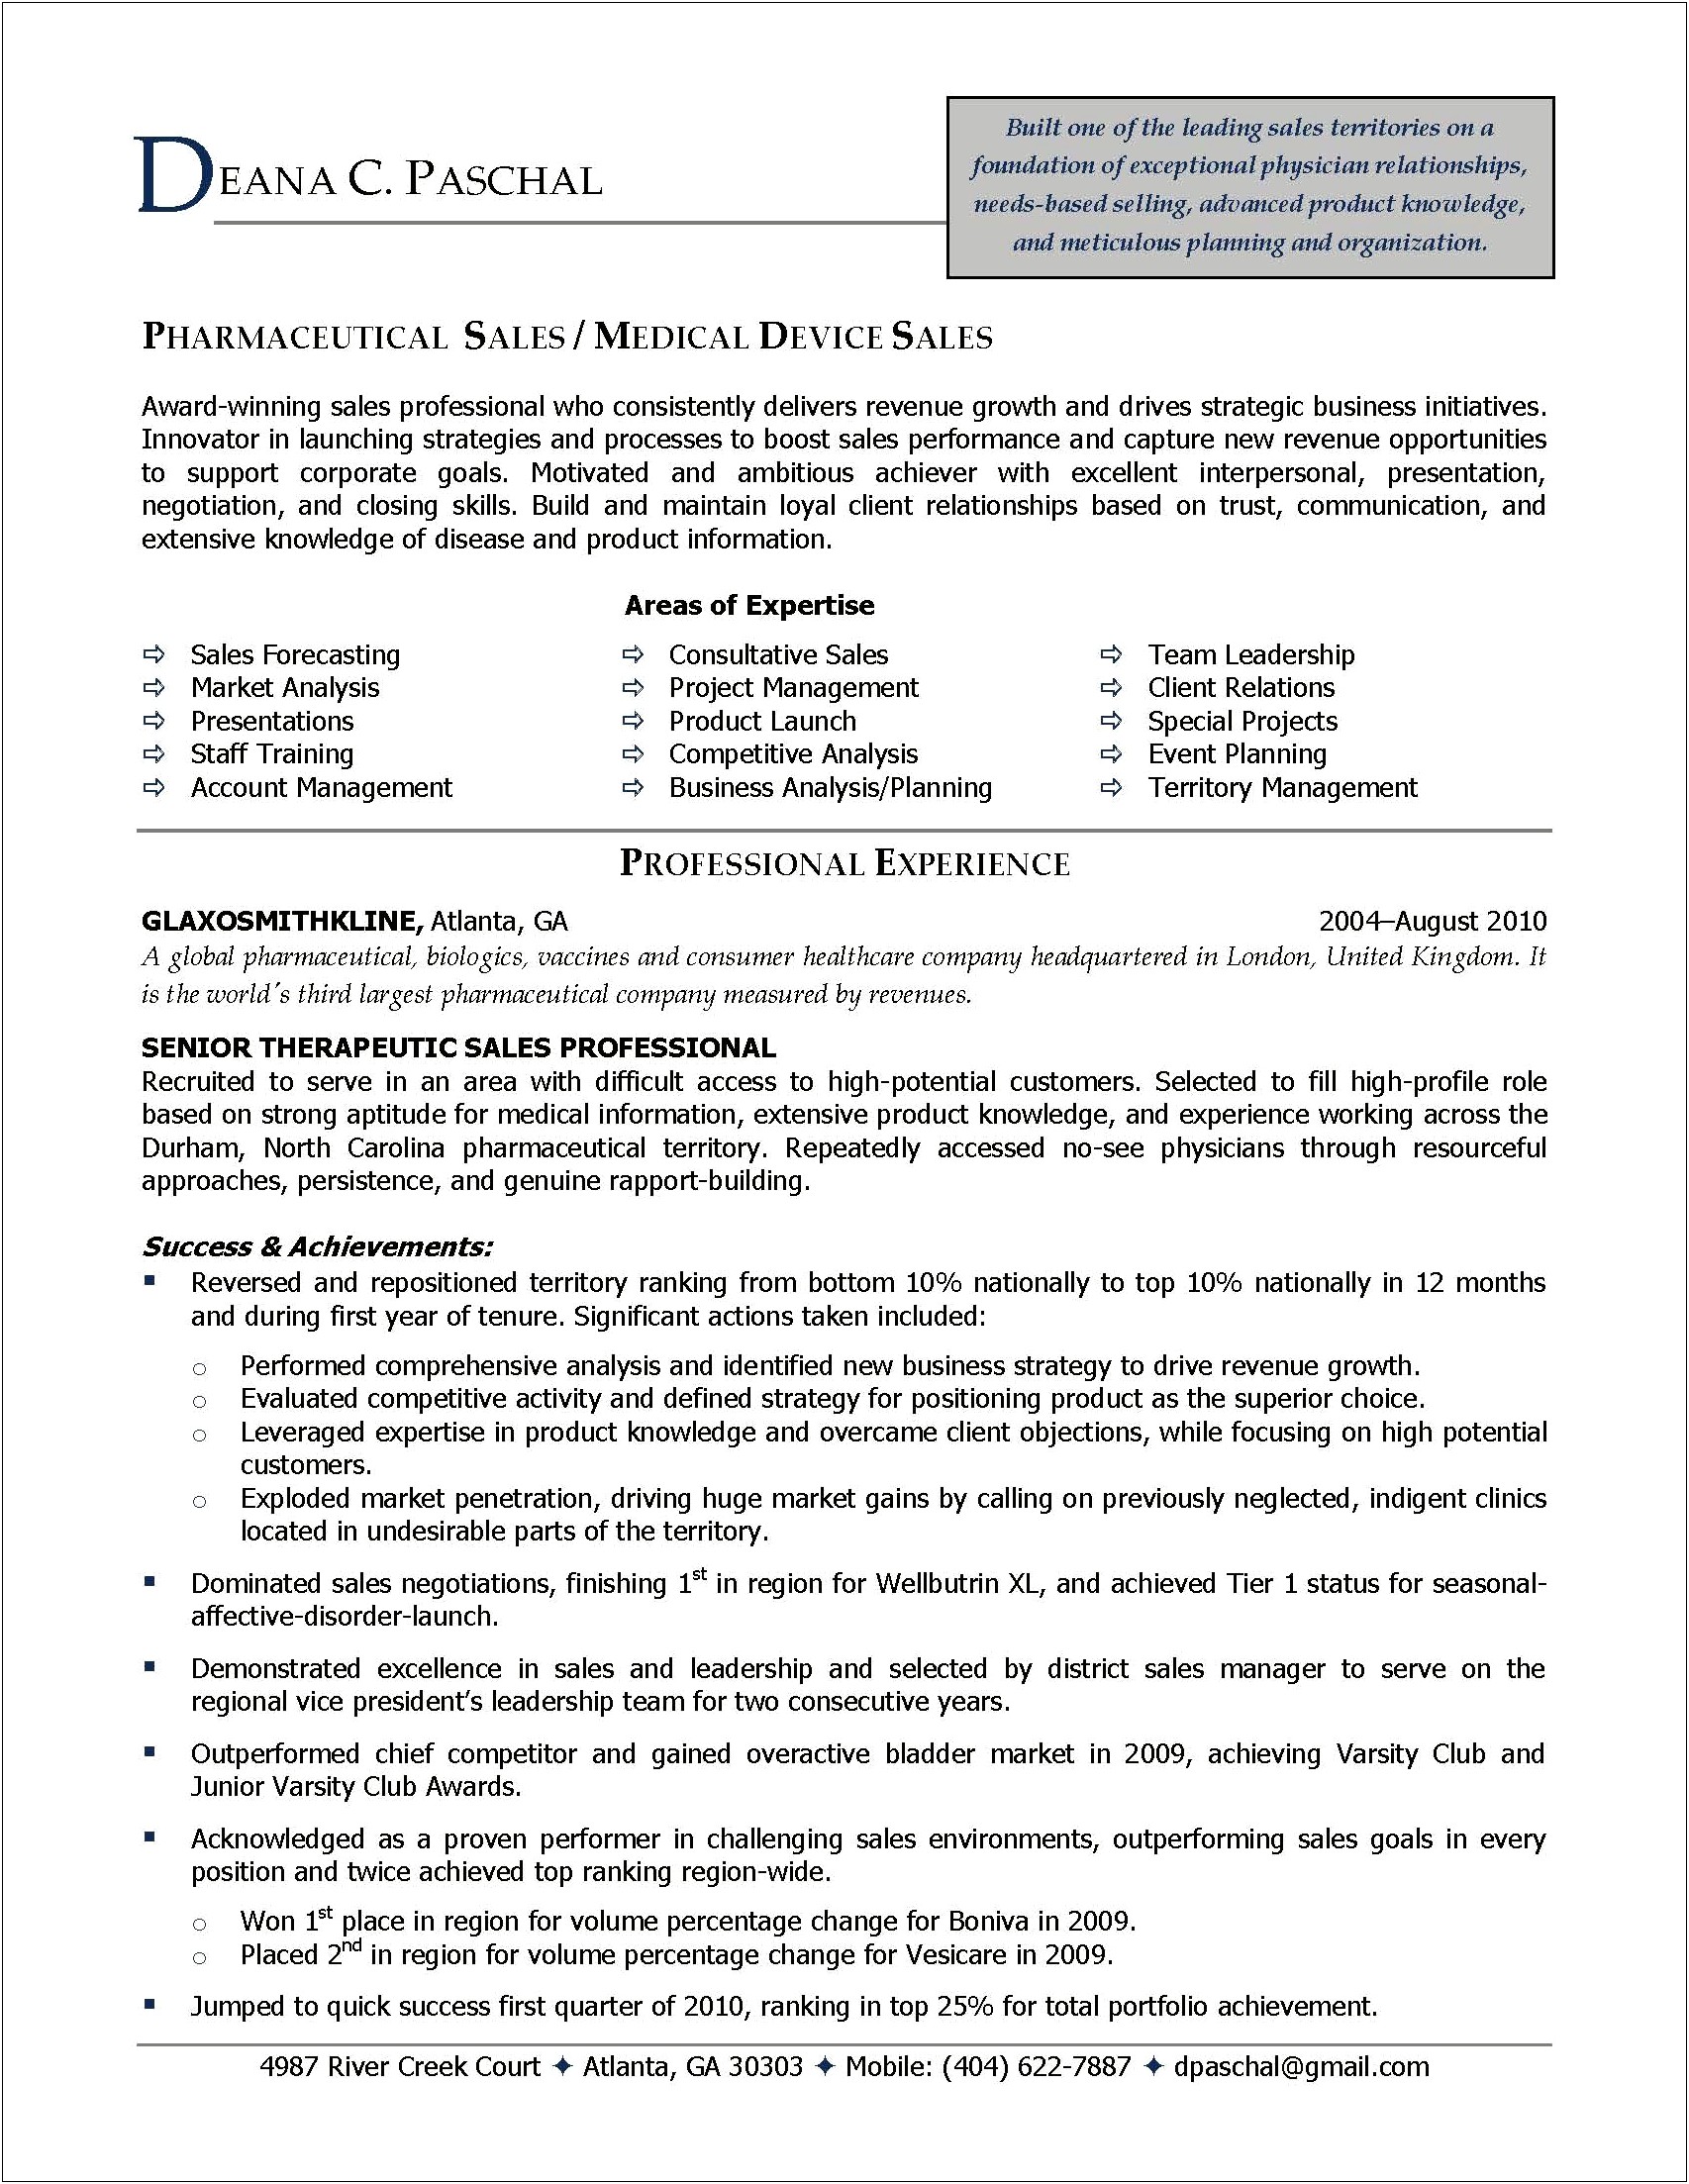 Sample Resume For Pharmaceutical Analyst